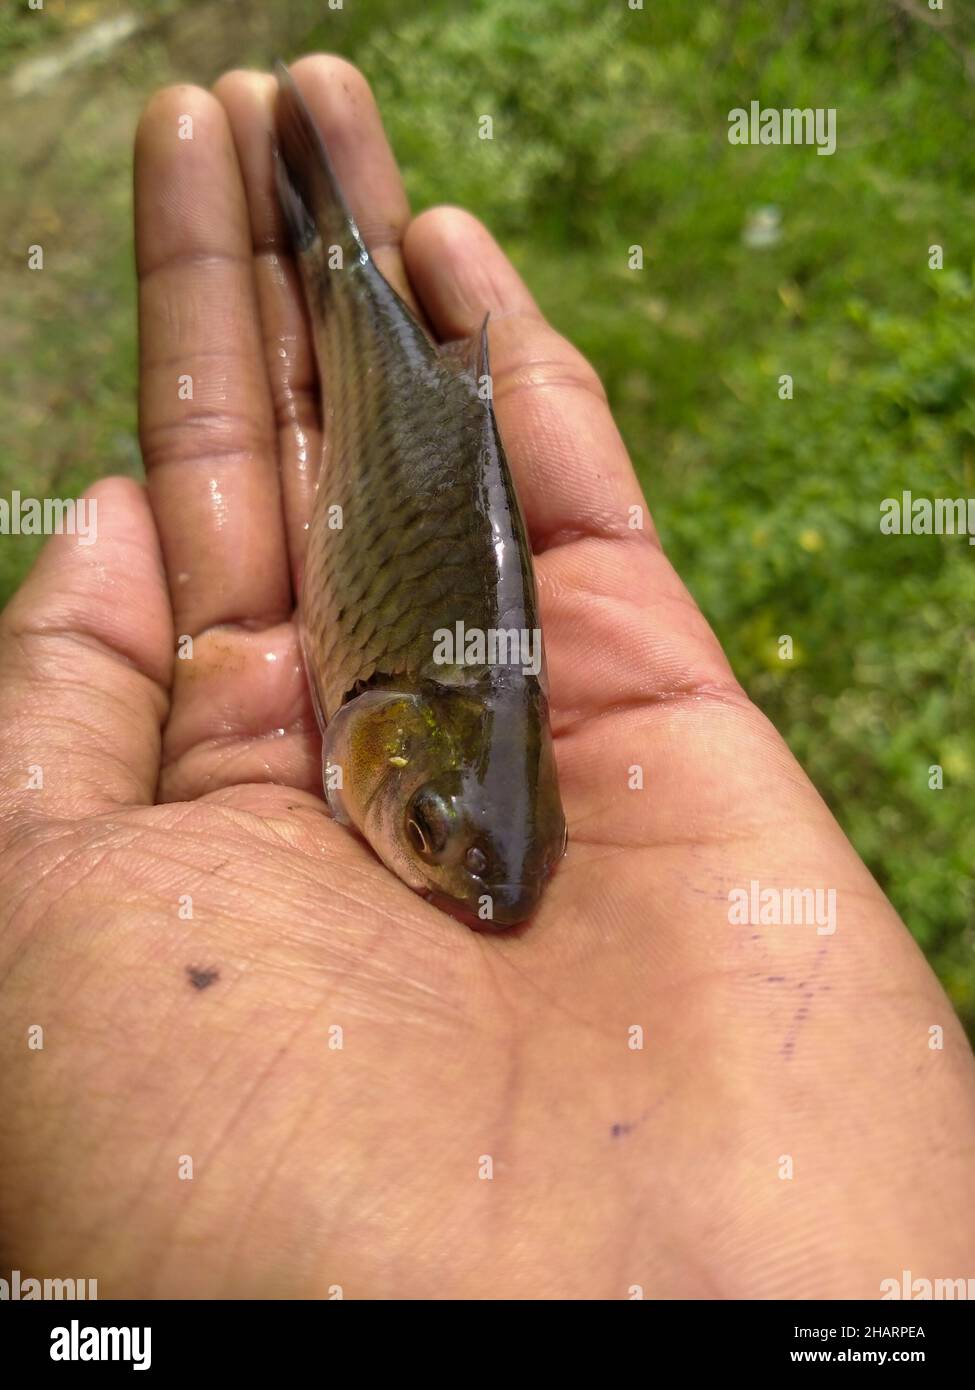 Vertikale Aufnahme einer Hand, die einen lebendigen Fisch hält Stockfoto